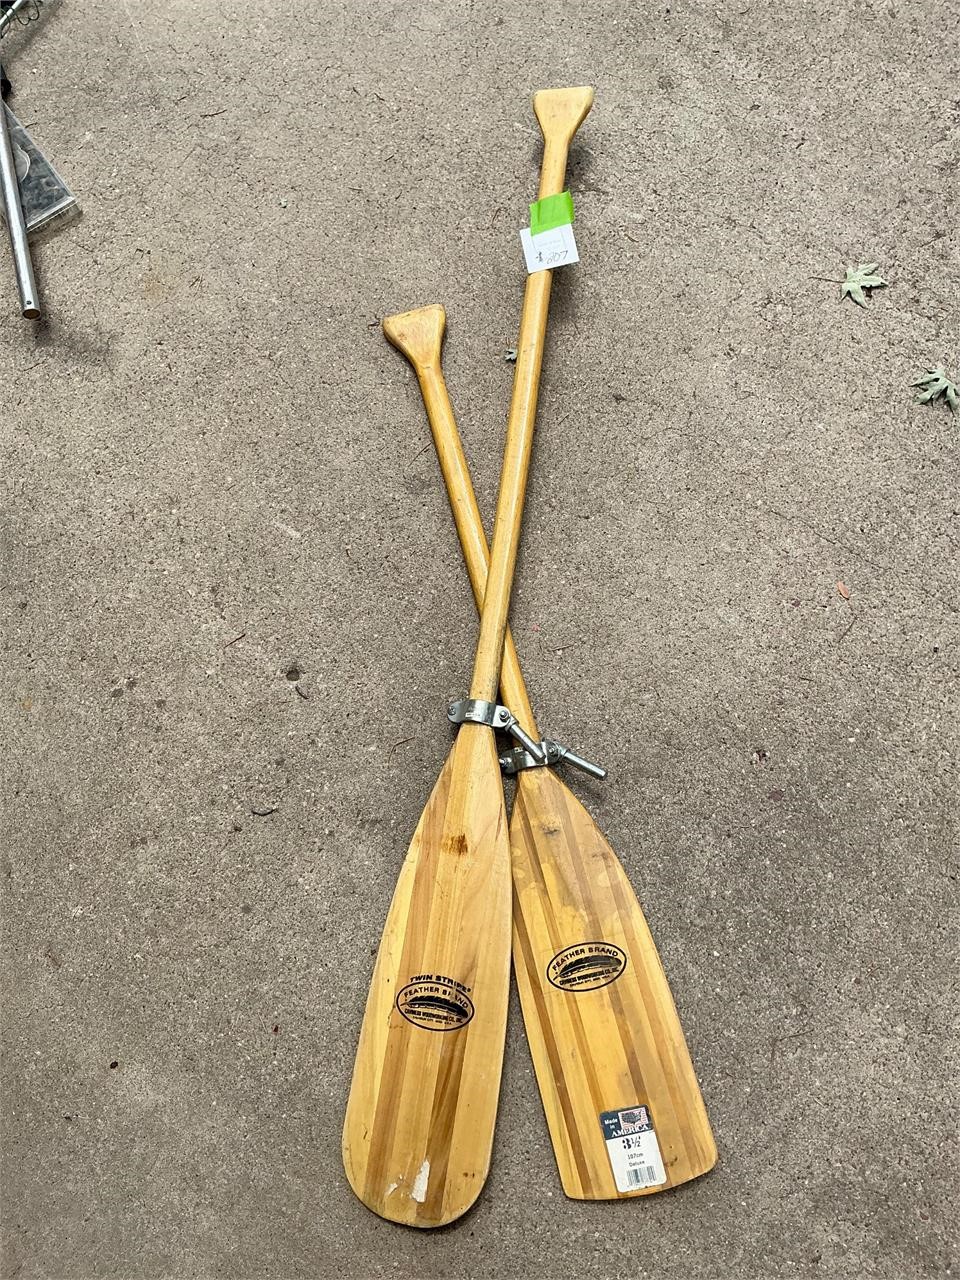 Boat oars